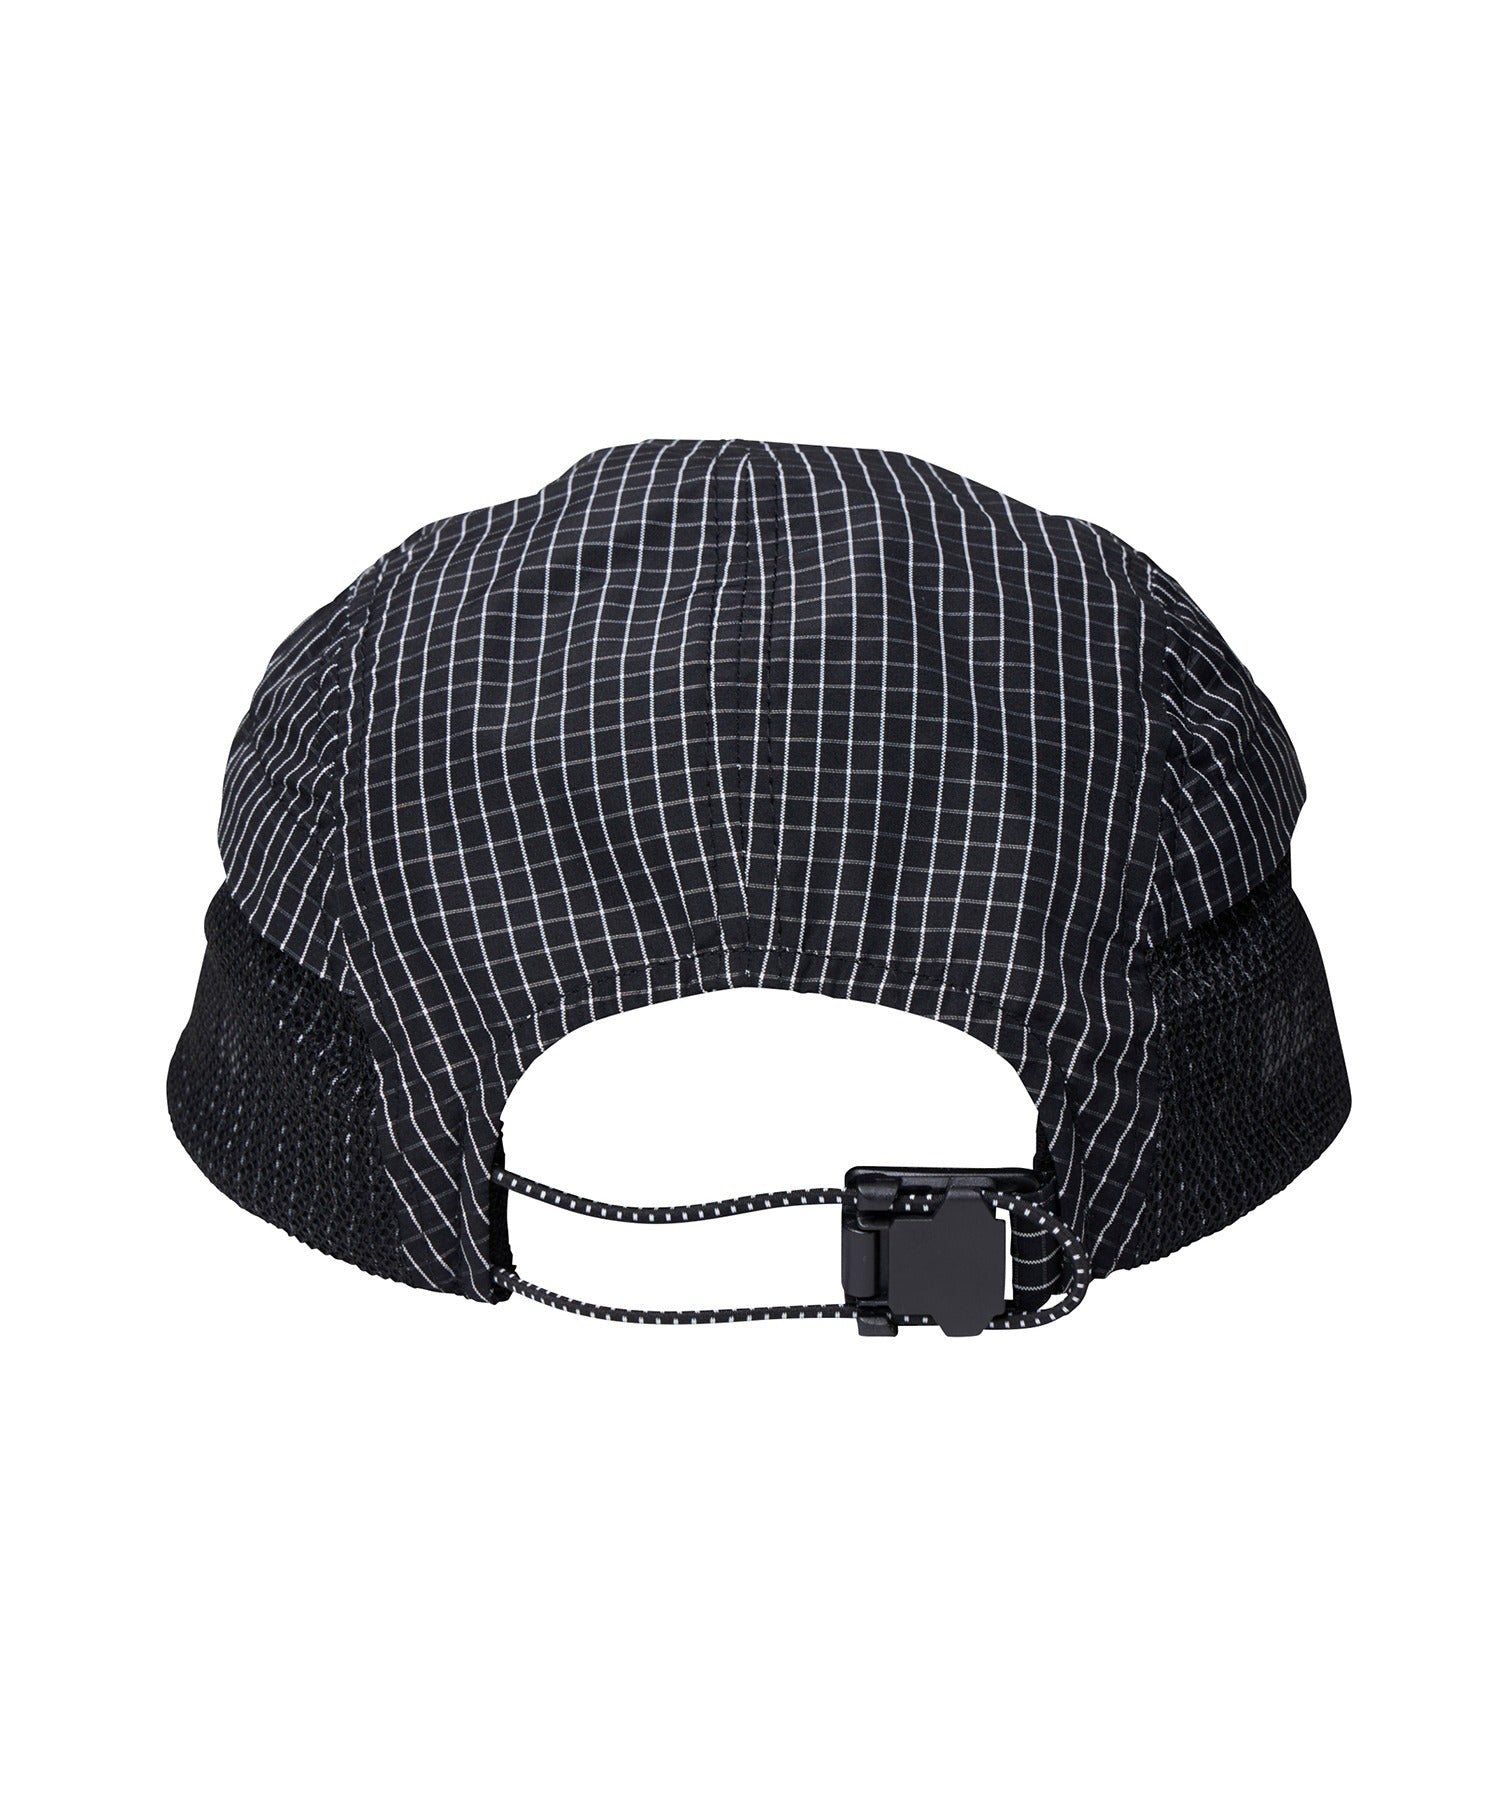 GRID CLOTH CAP